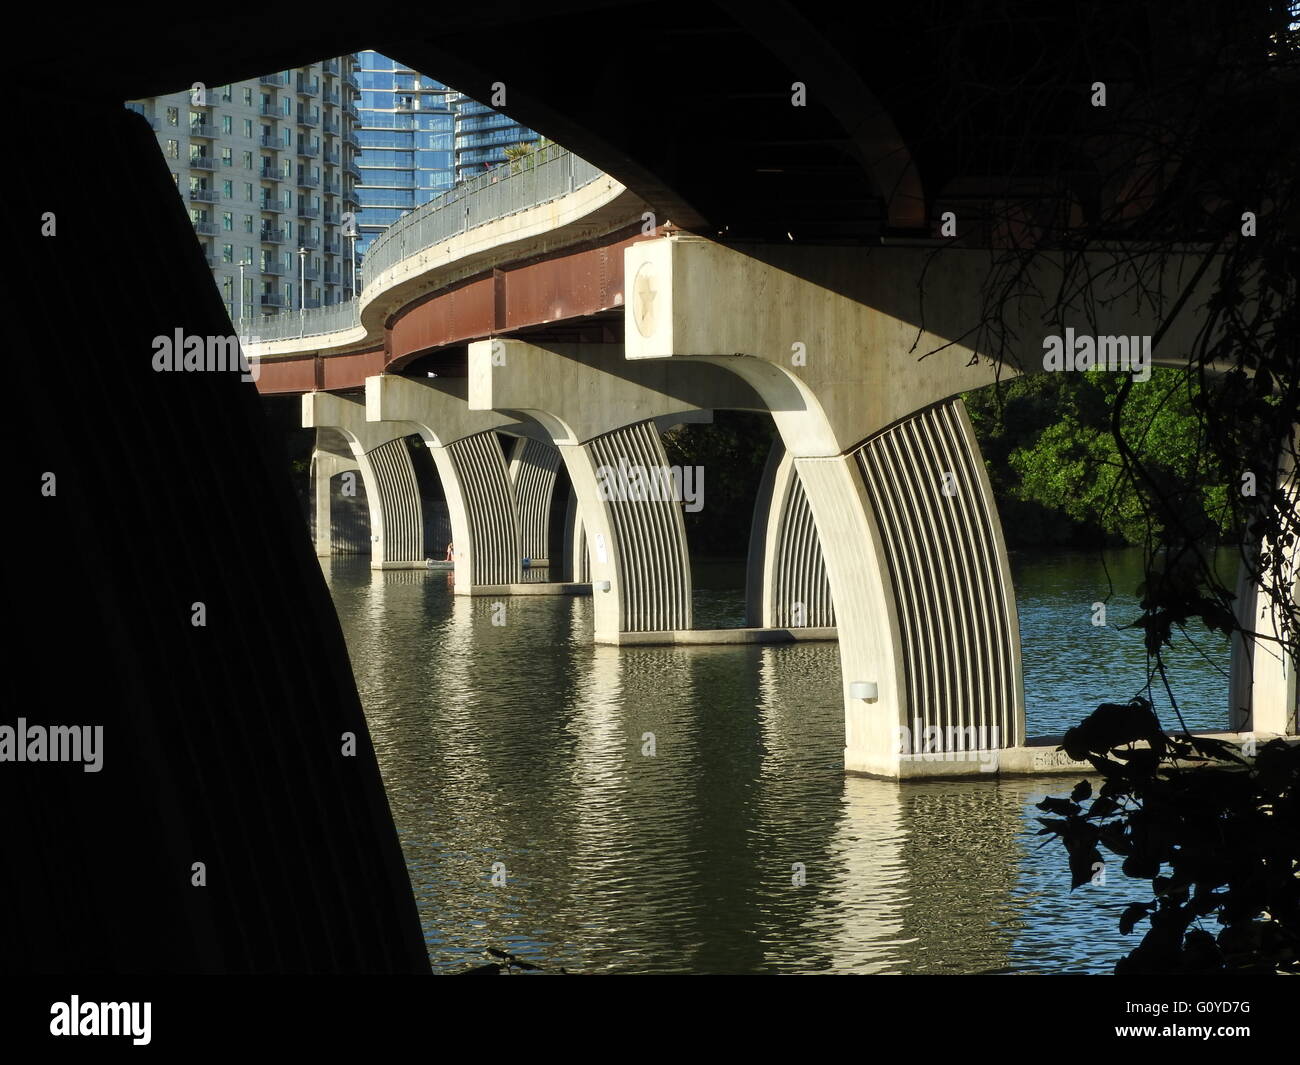 Este puente proporciona repetición placentera y curvas. Foto de stock